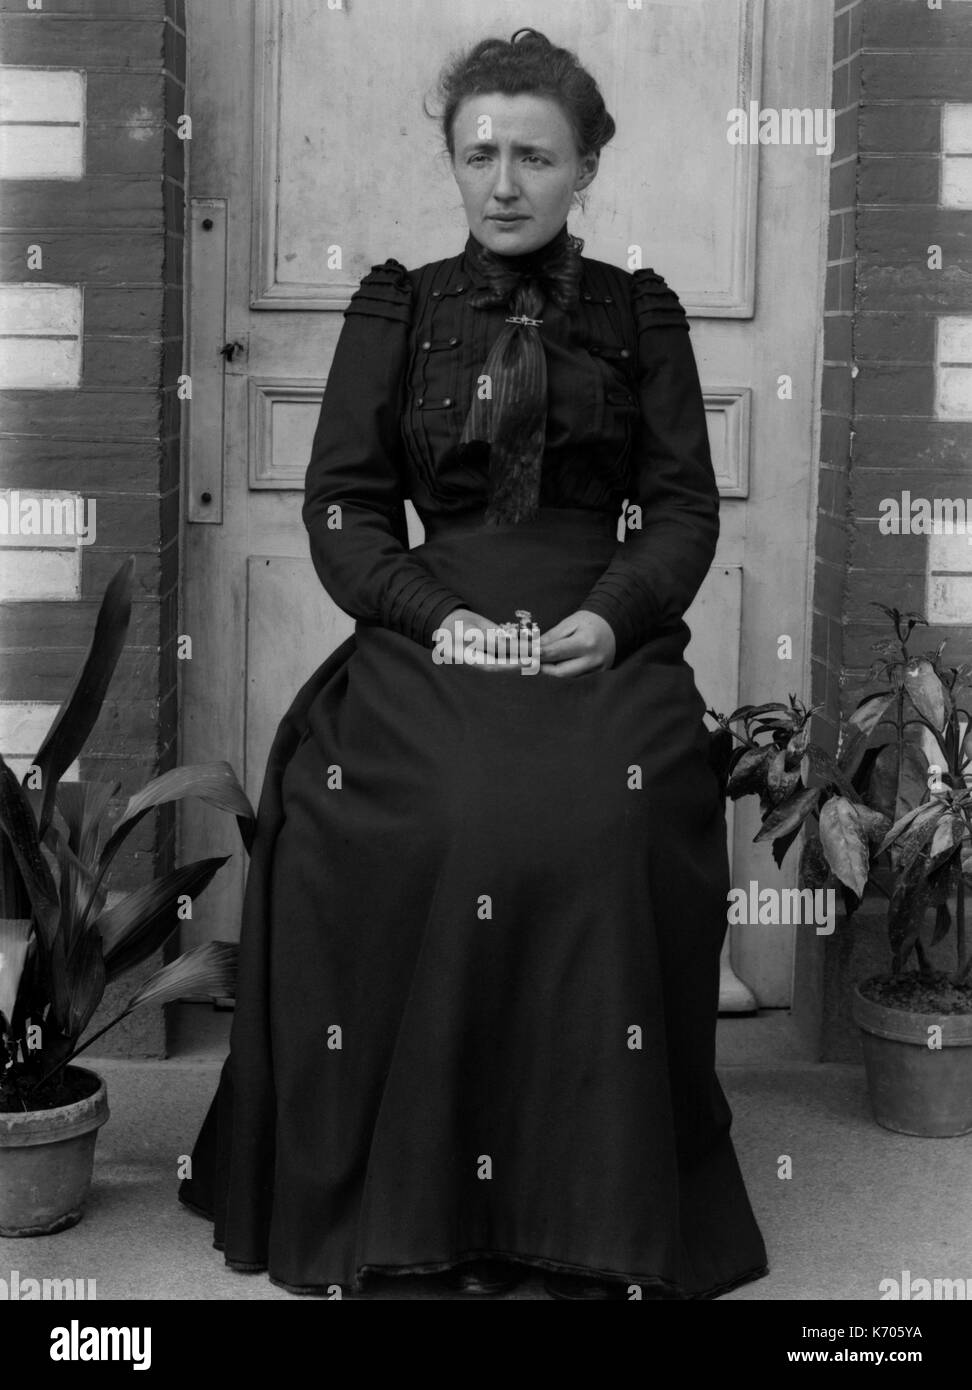 AJAXNETPHOTO. 1891-1910 (ca.). Frankreich. - Porträt einer Frau auf der Suche besorgt, Sitzen im Freien in einem langen Kleid. Fotograf: unbekannt © DIGITAL IMAGE COPYRIGHT AJAX VINTAGE BILDARCHIV QUELLE: AJAX VINTAGE BILDARCHIV SAMMLUNG REF: AVL FRA 1890 B 29 X 1225 Stockfoto